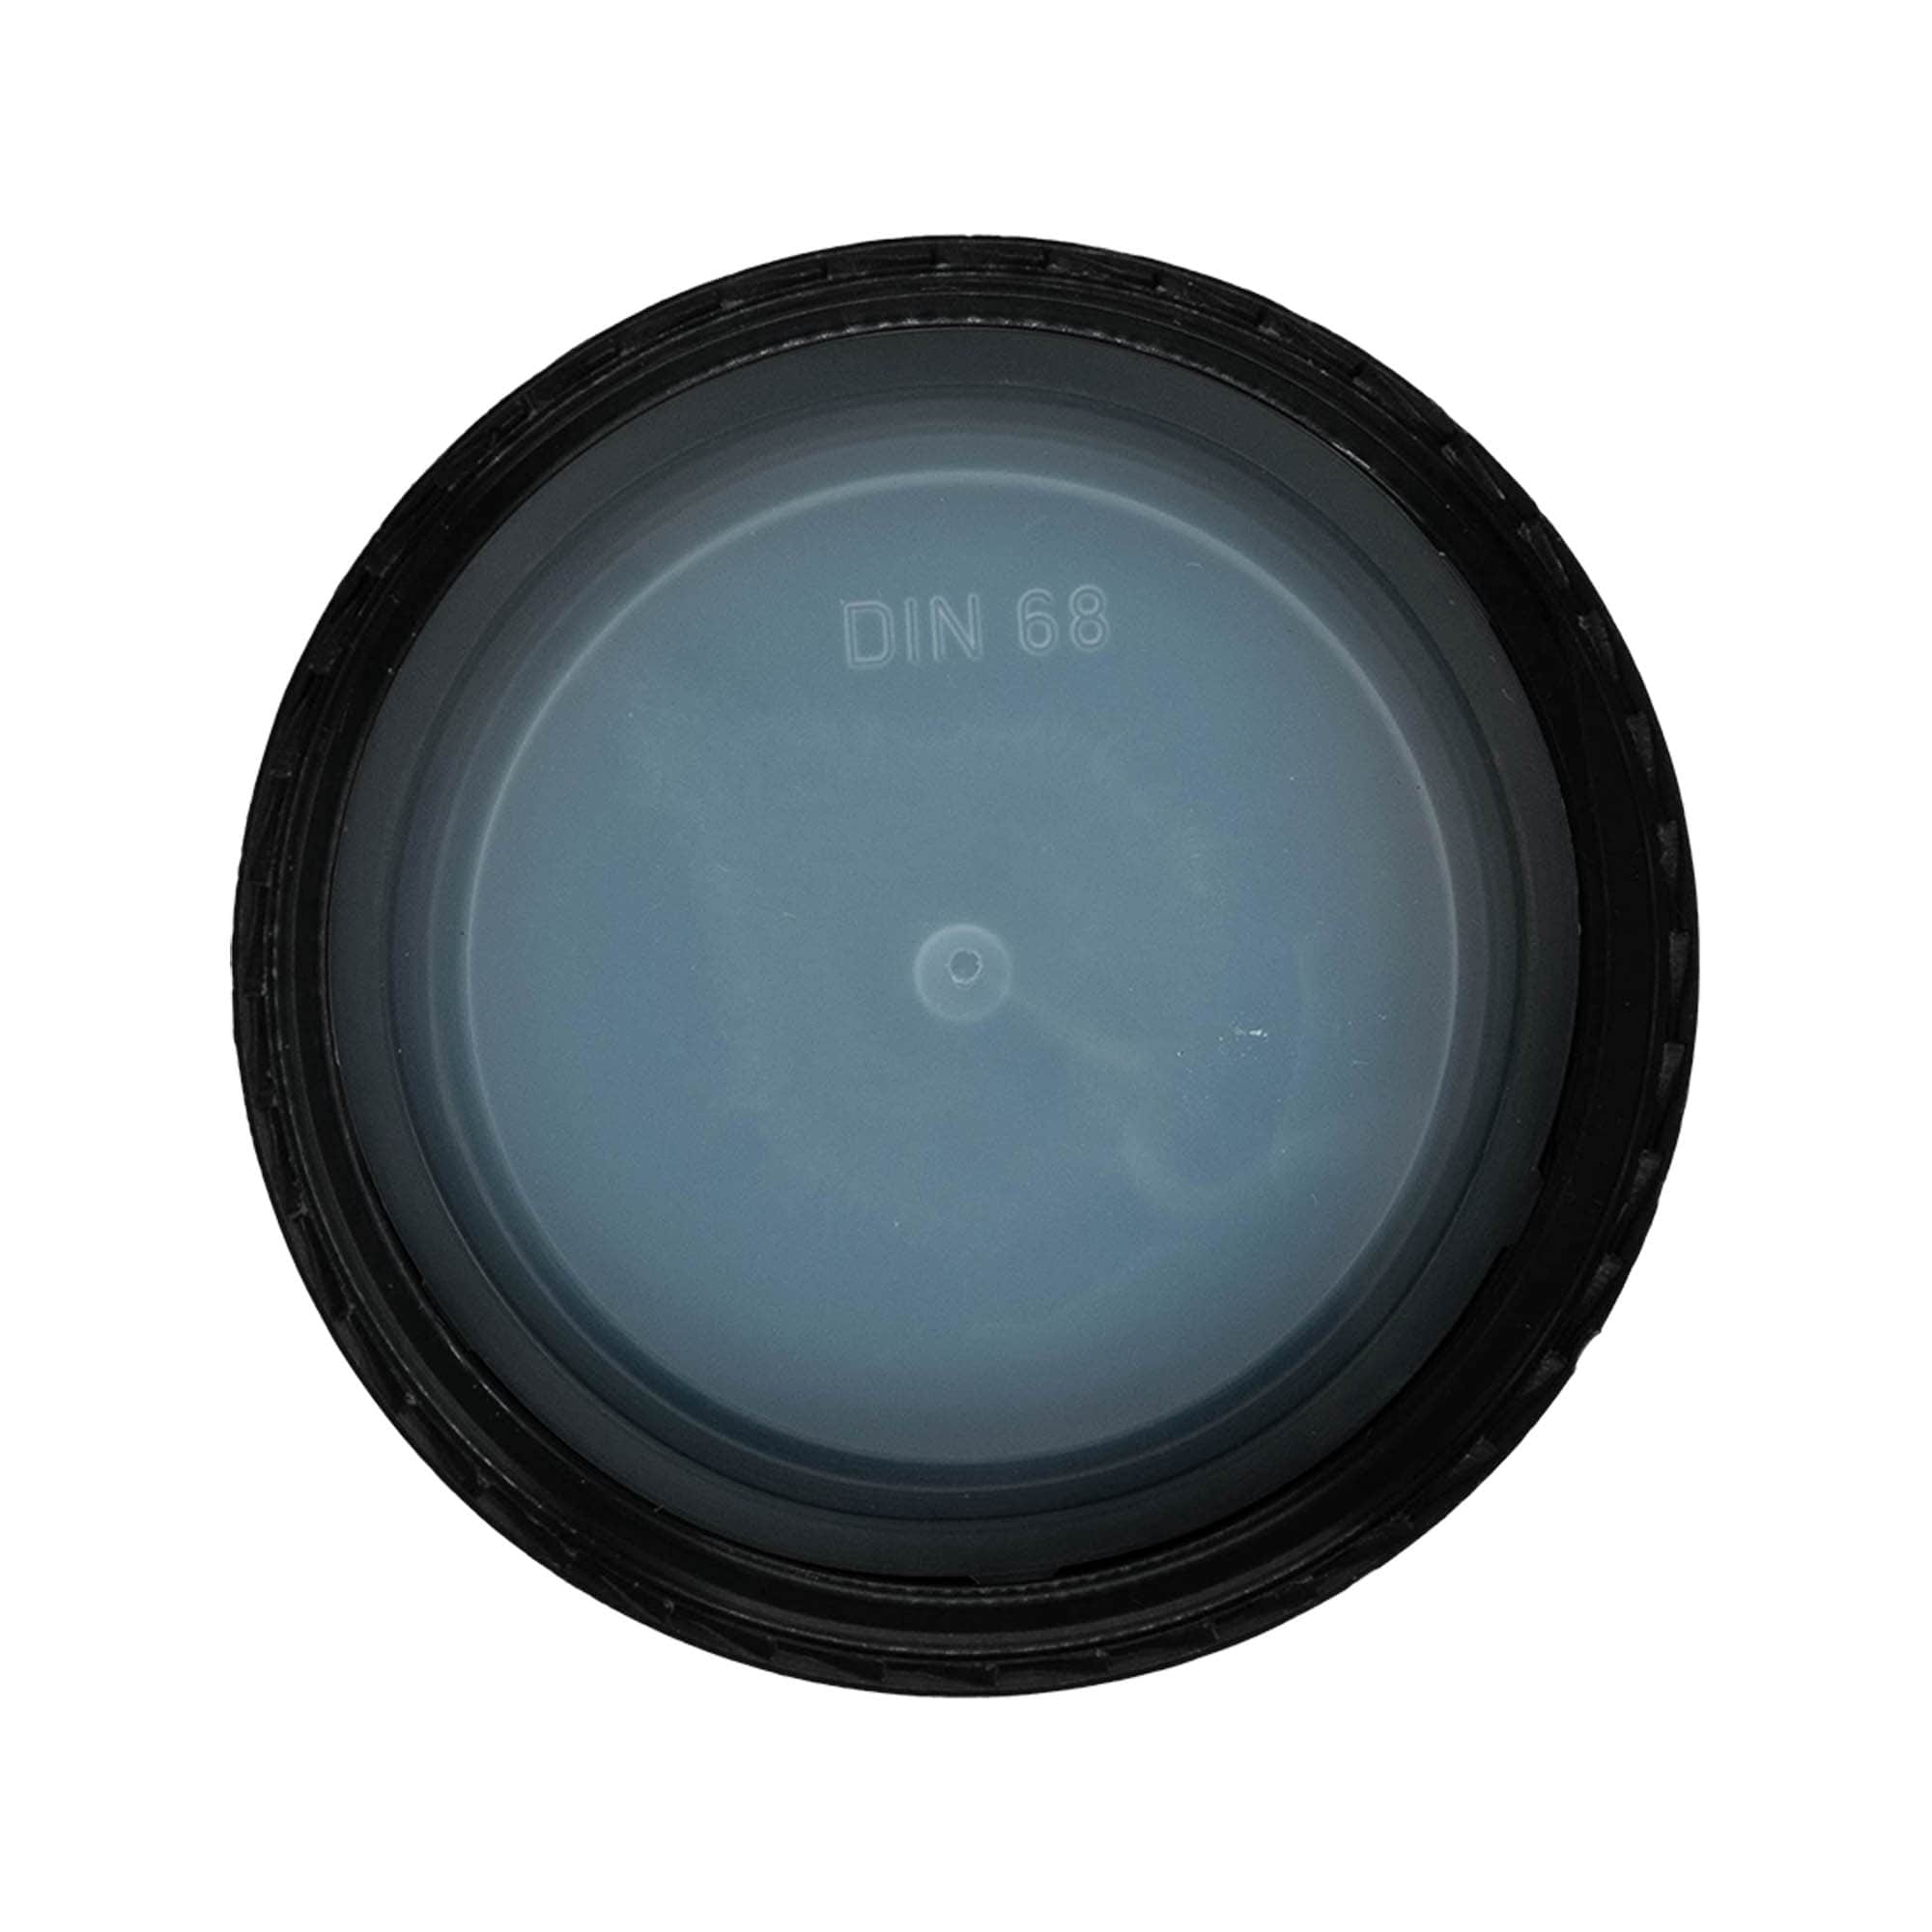 Skruvkapsel, PP-plast, svart för mynning: DIN 68